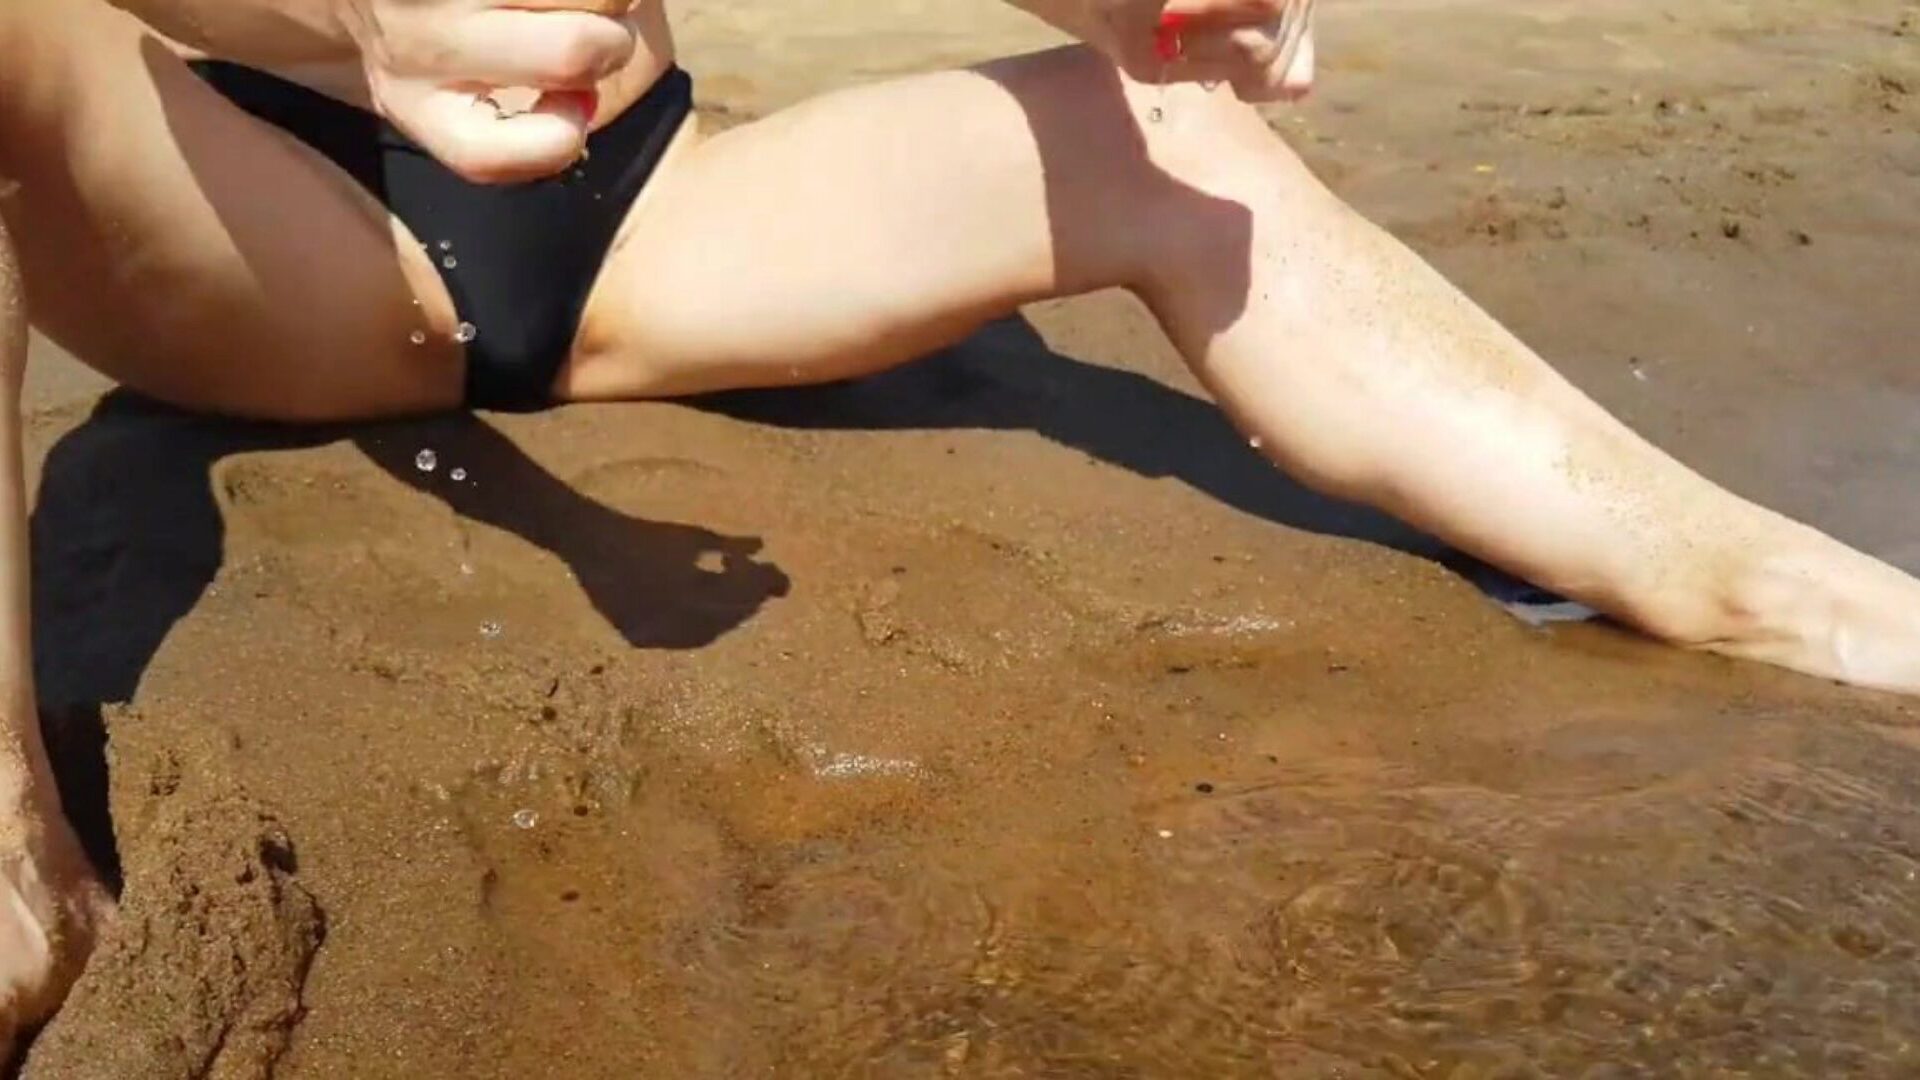 في سن المراهقة بالإصبع على شاطئ عام ويحصل على هزة الجماع الرائعة الحقيقية - ضيق كس playskitty ultra hd 4k